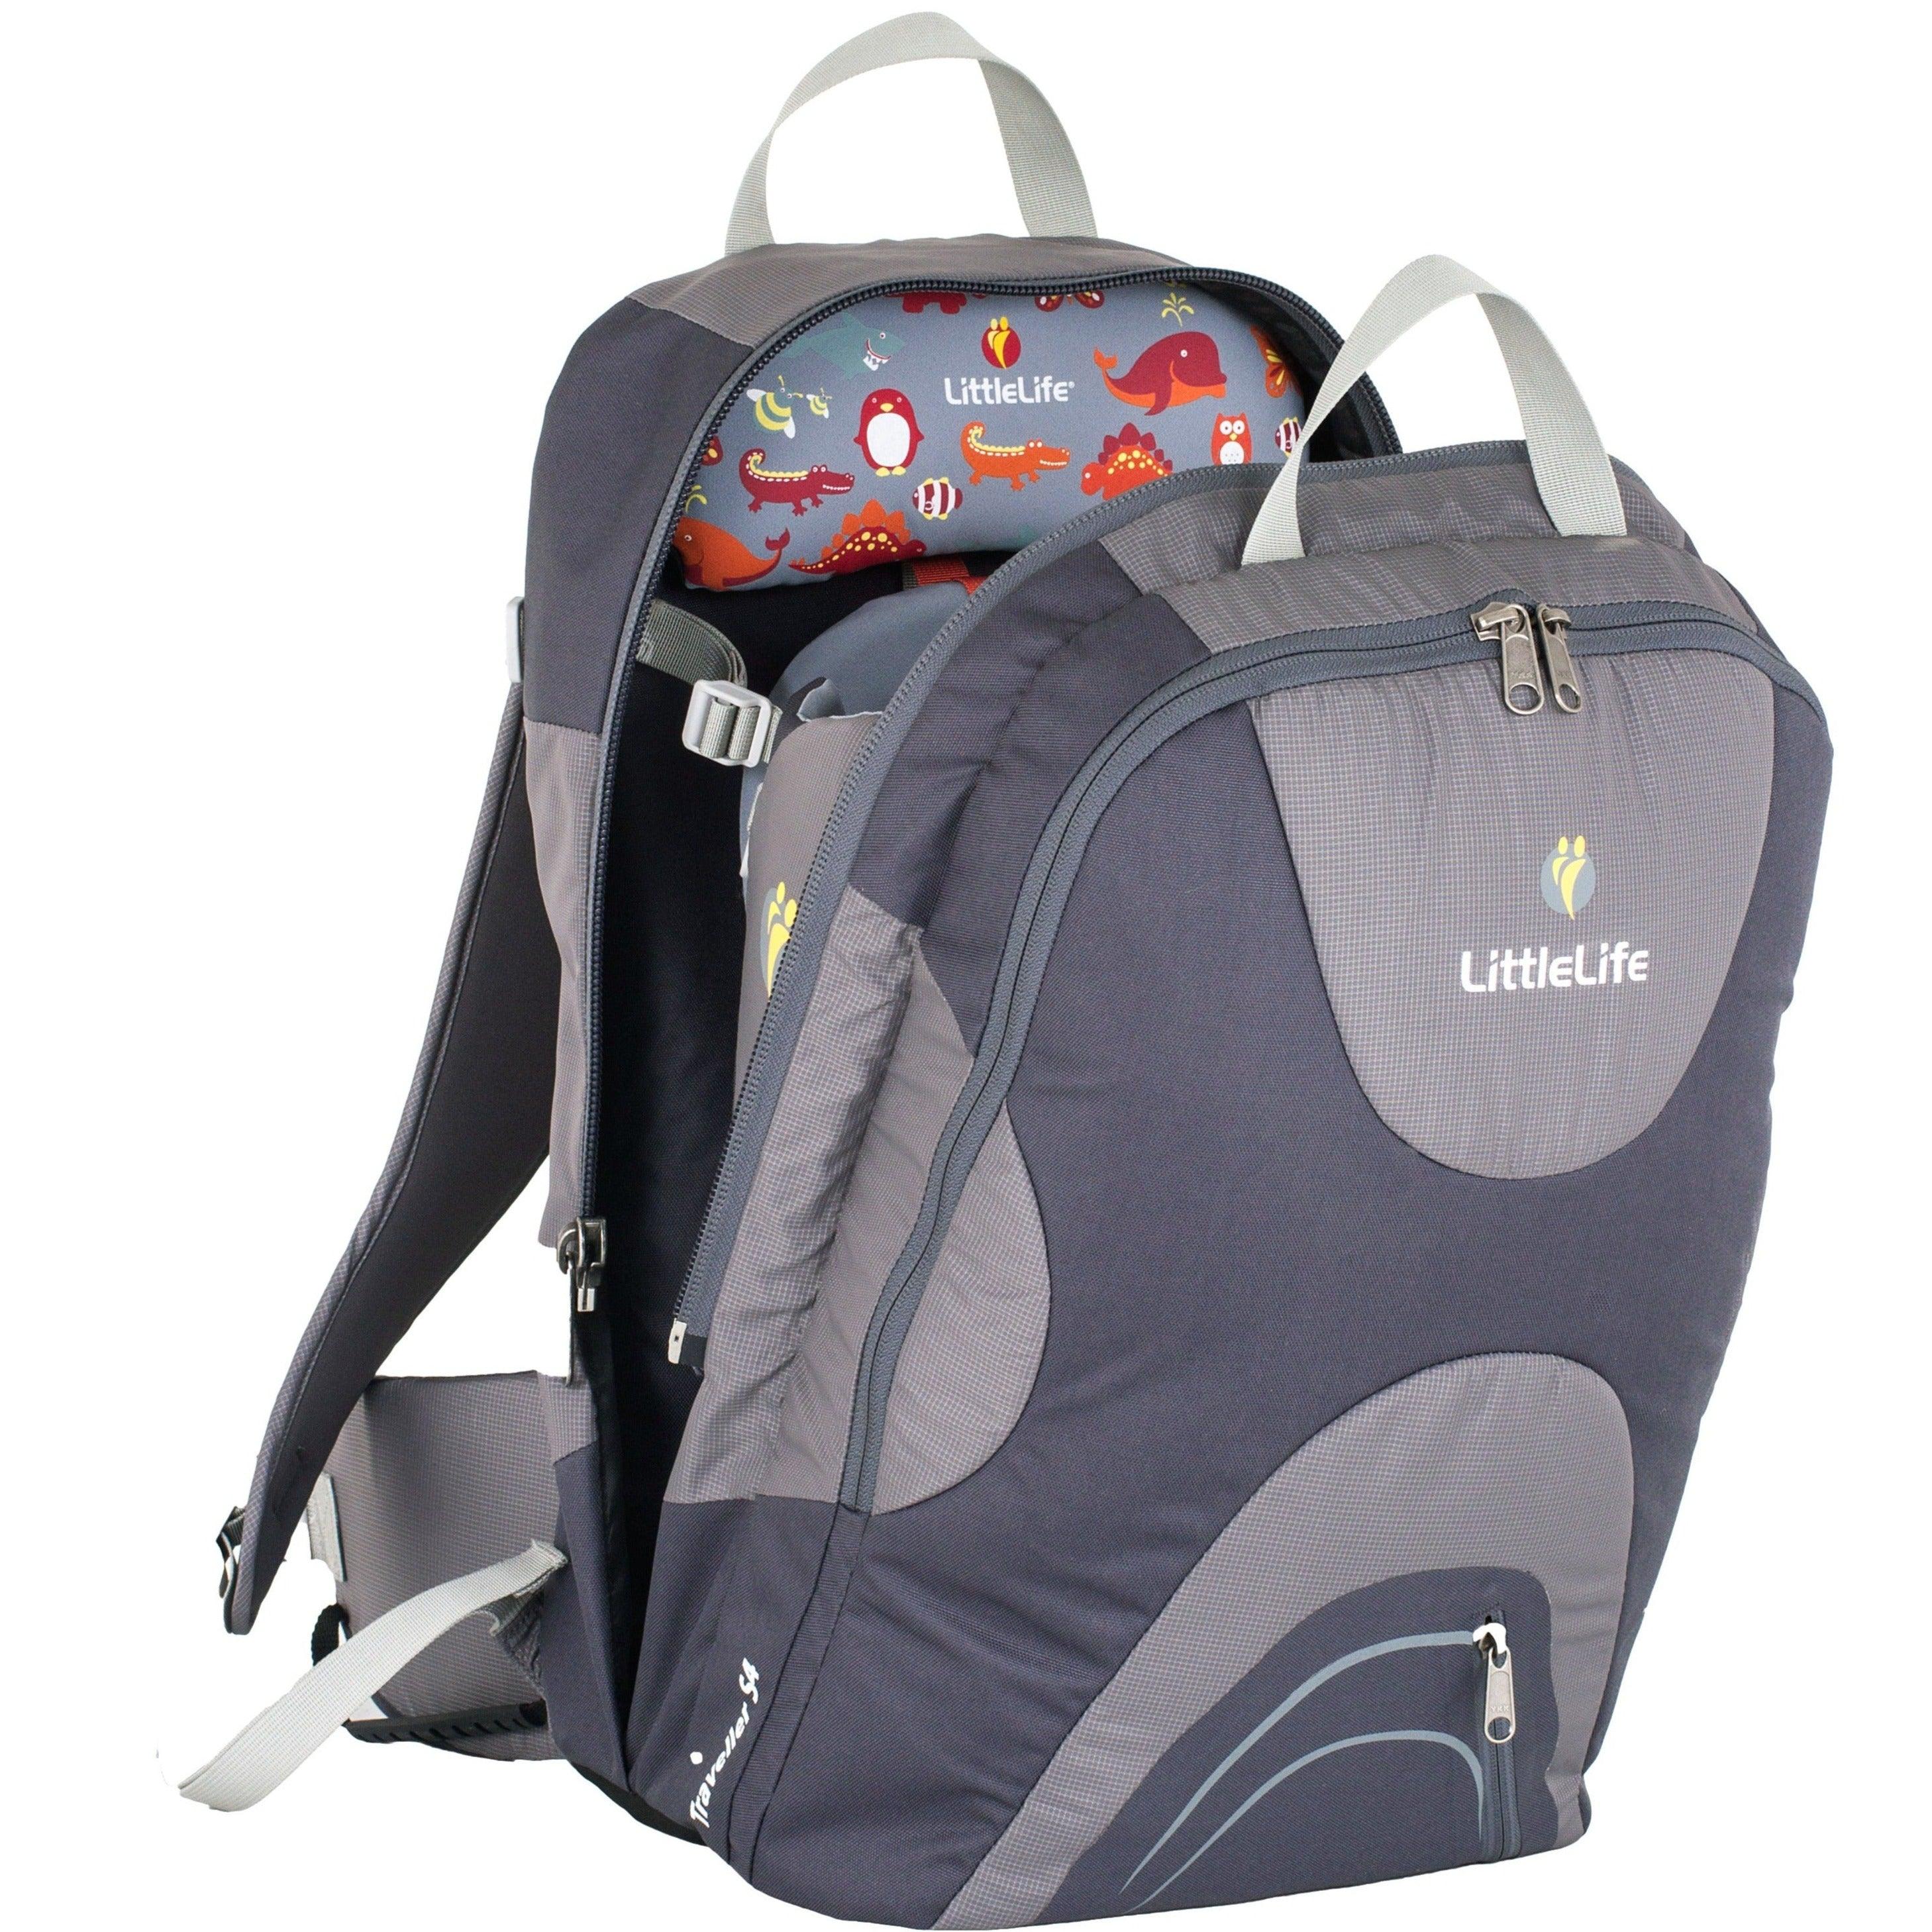 LittleLife: Traveller S4 rejsebærer op til 15 kg